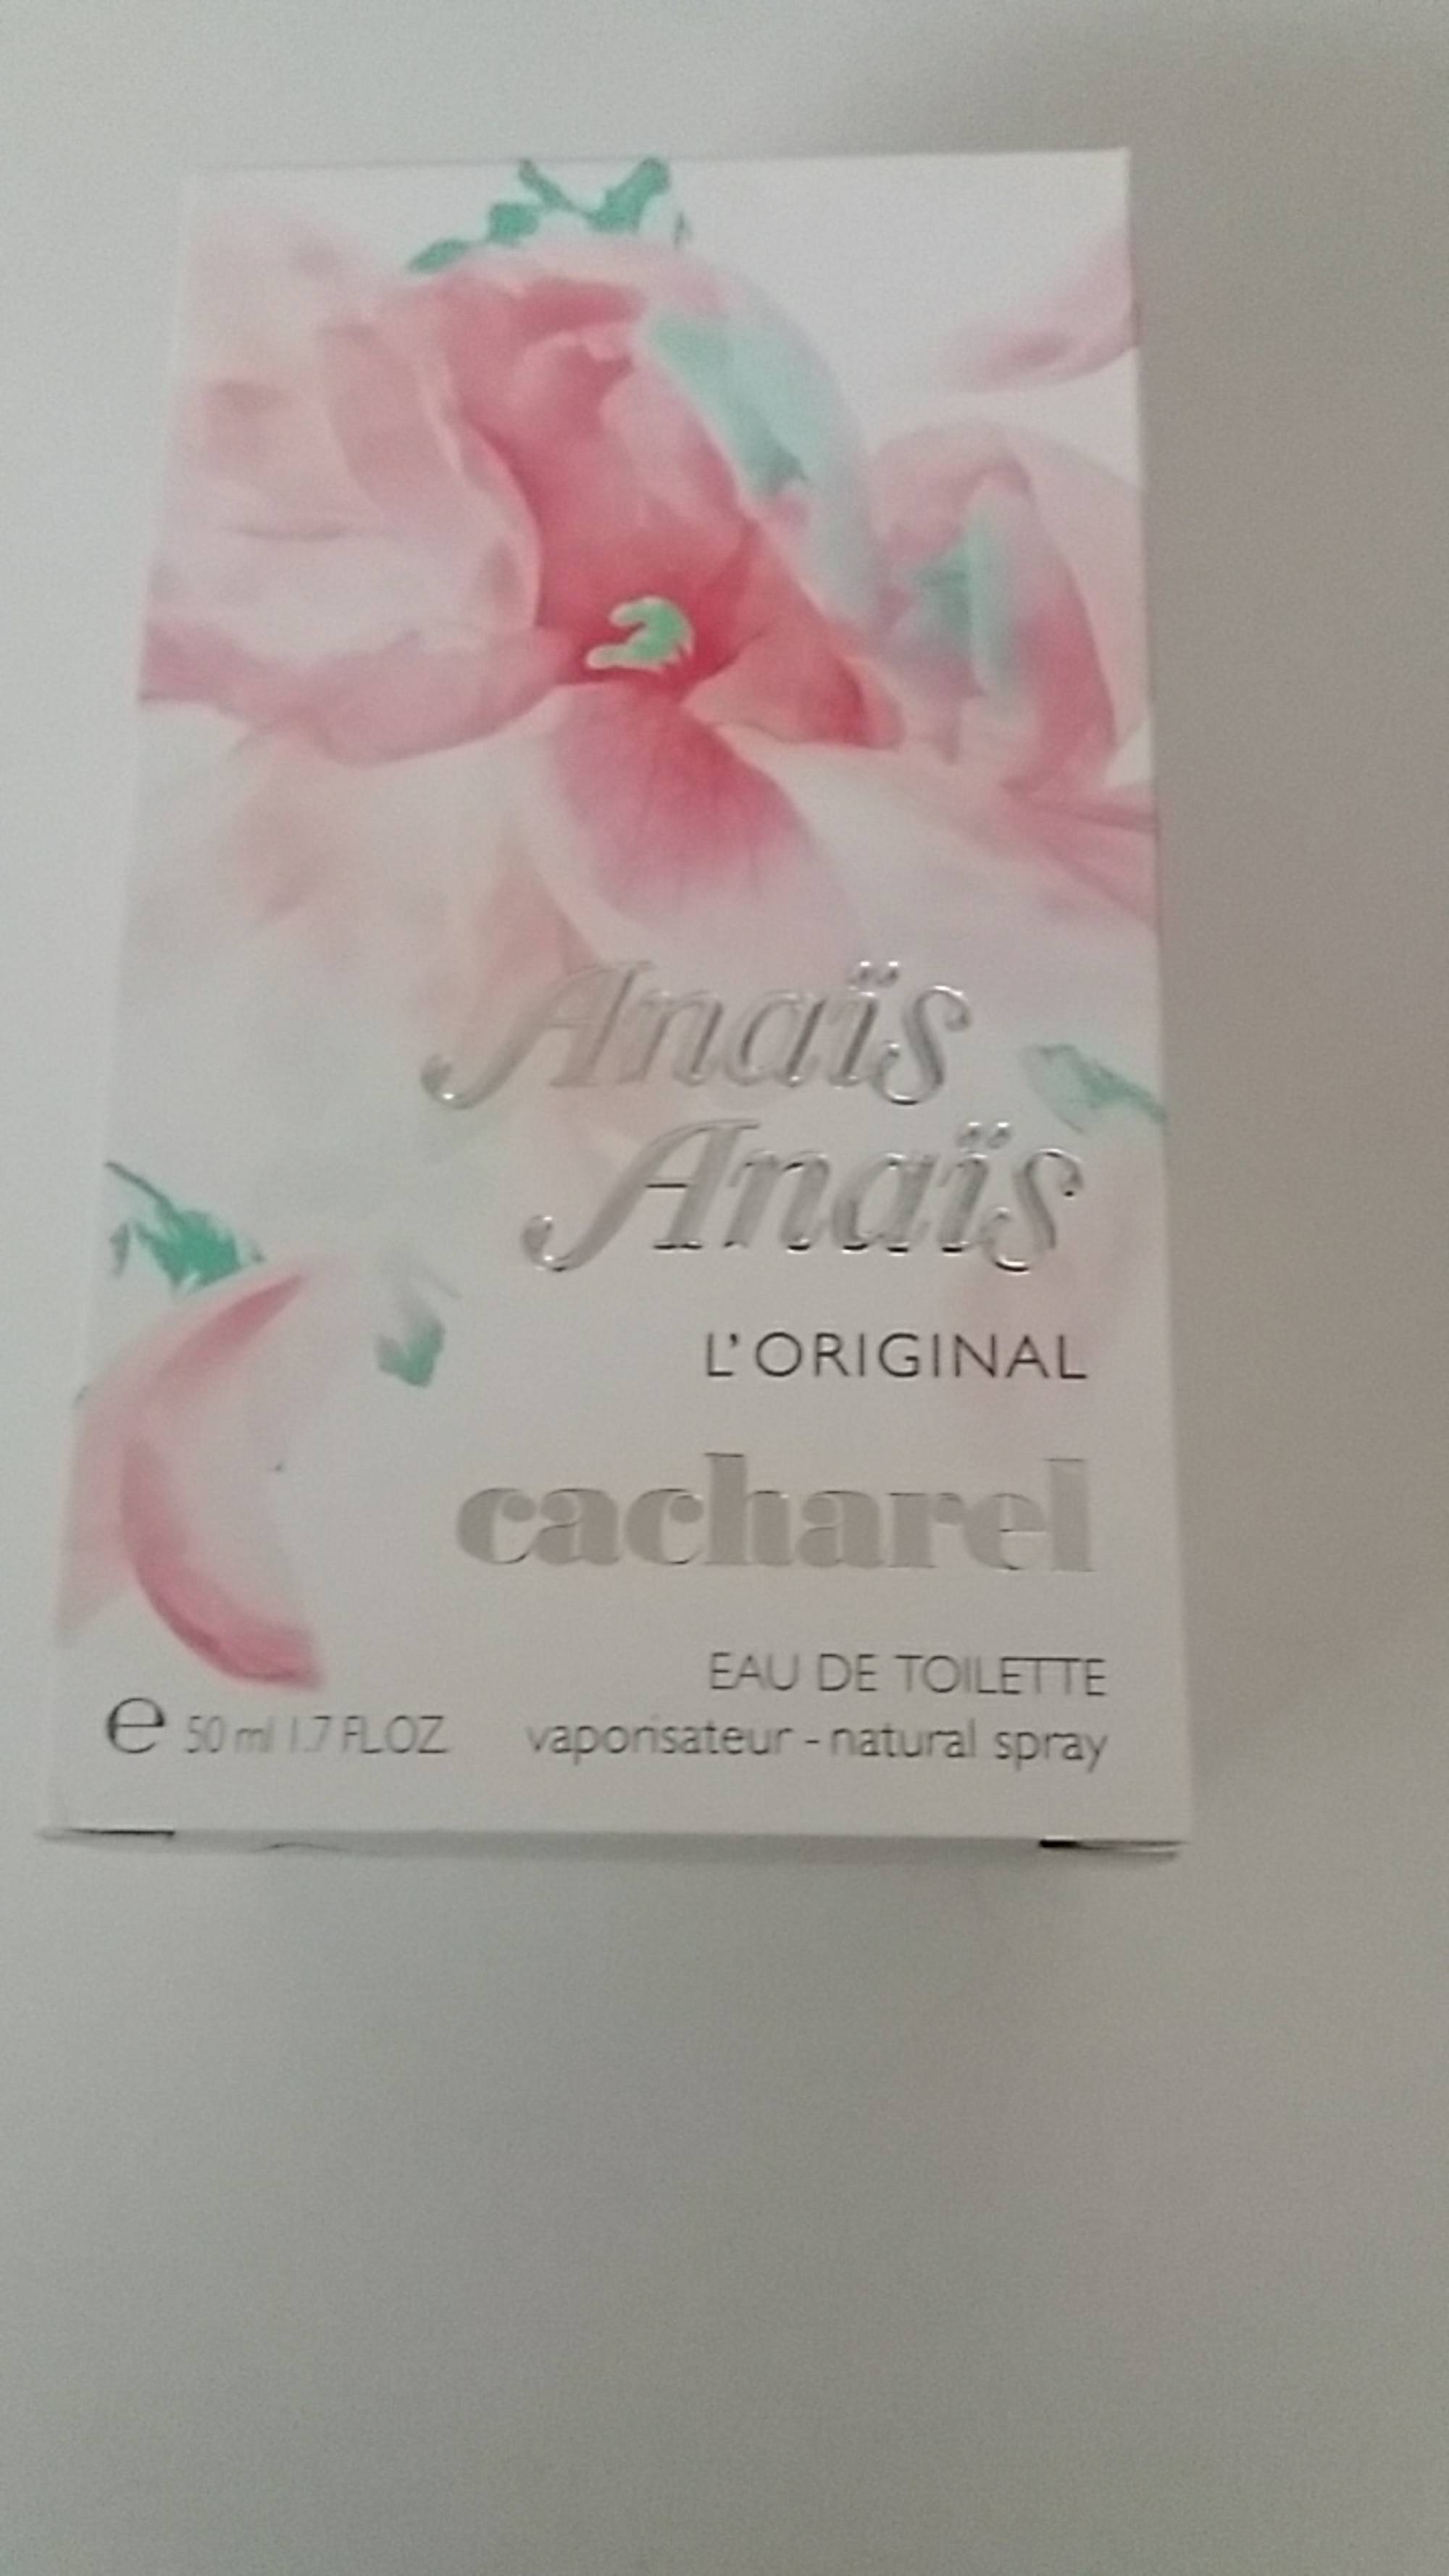 CACHAREL - Anaïs Anaïs - Eau de toilette